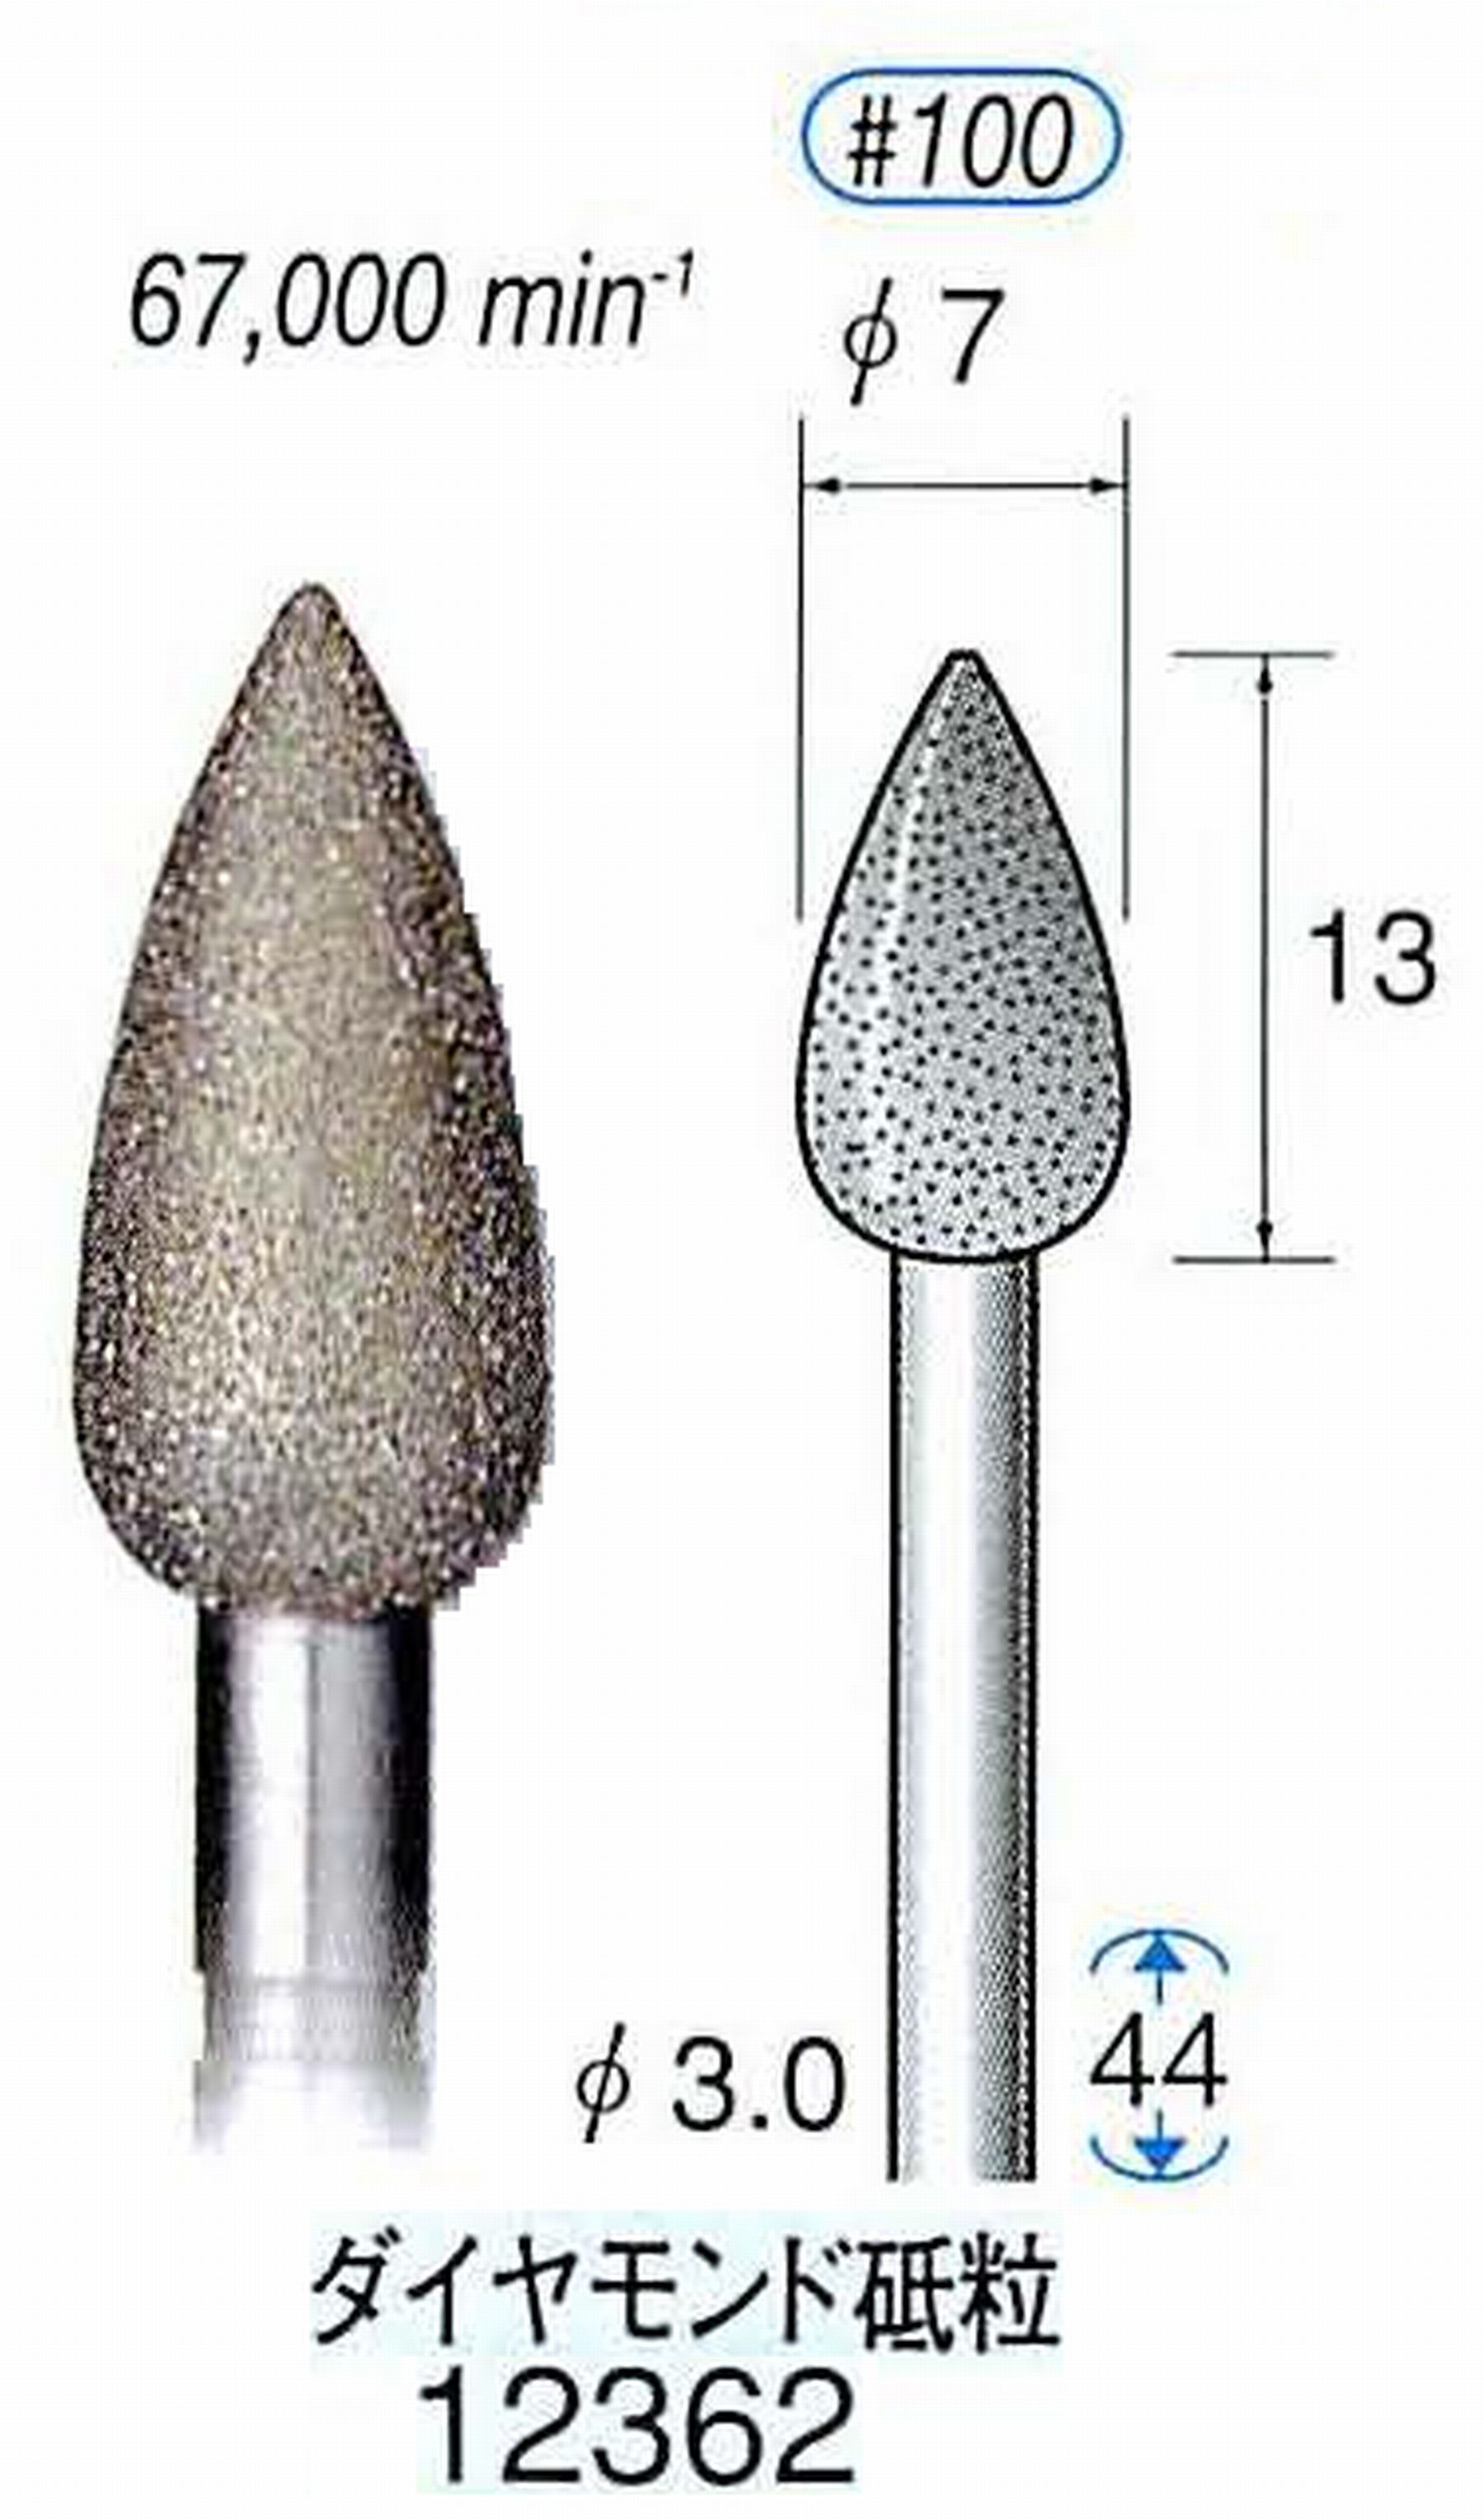 ナカニシ/NAKANISHI 電着ダイヤモンド ダイヤモンド砥粒 軸径(シャンク)φ3.0mm 12362